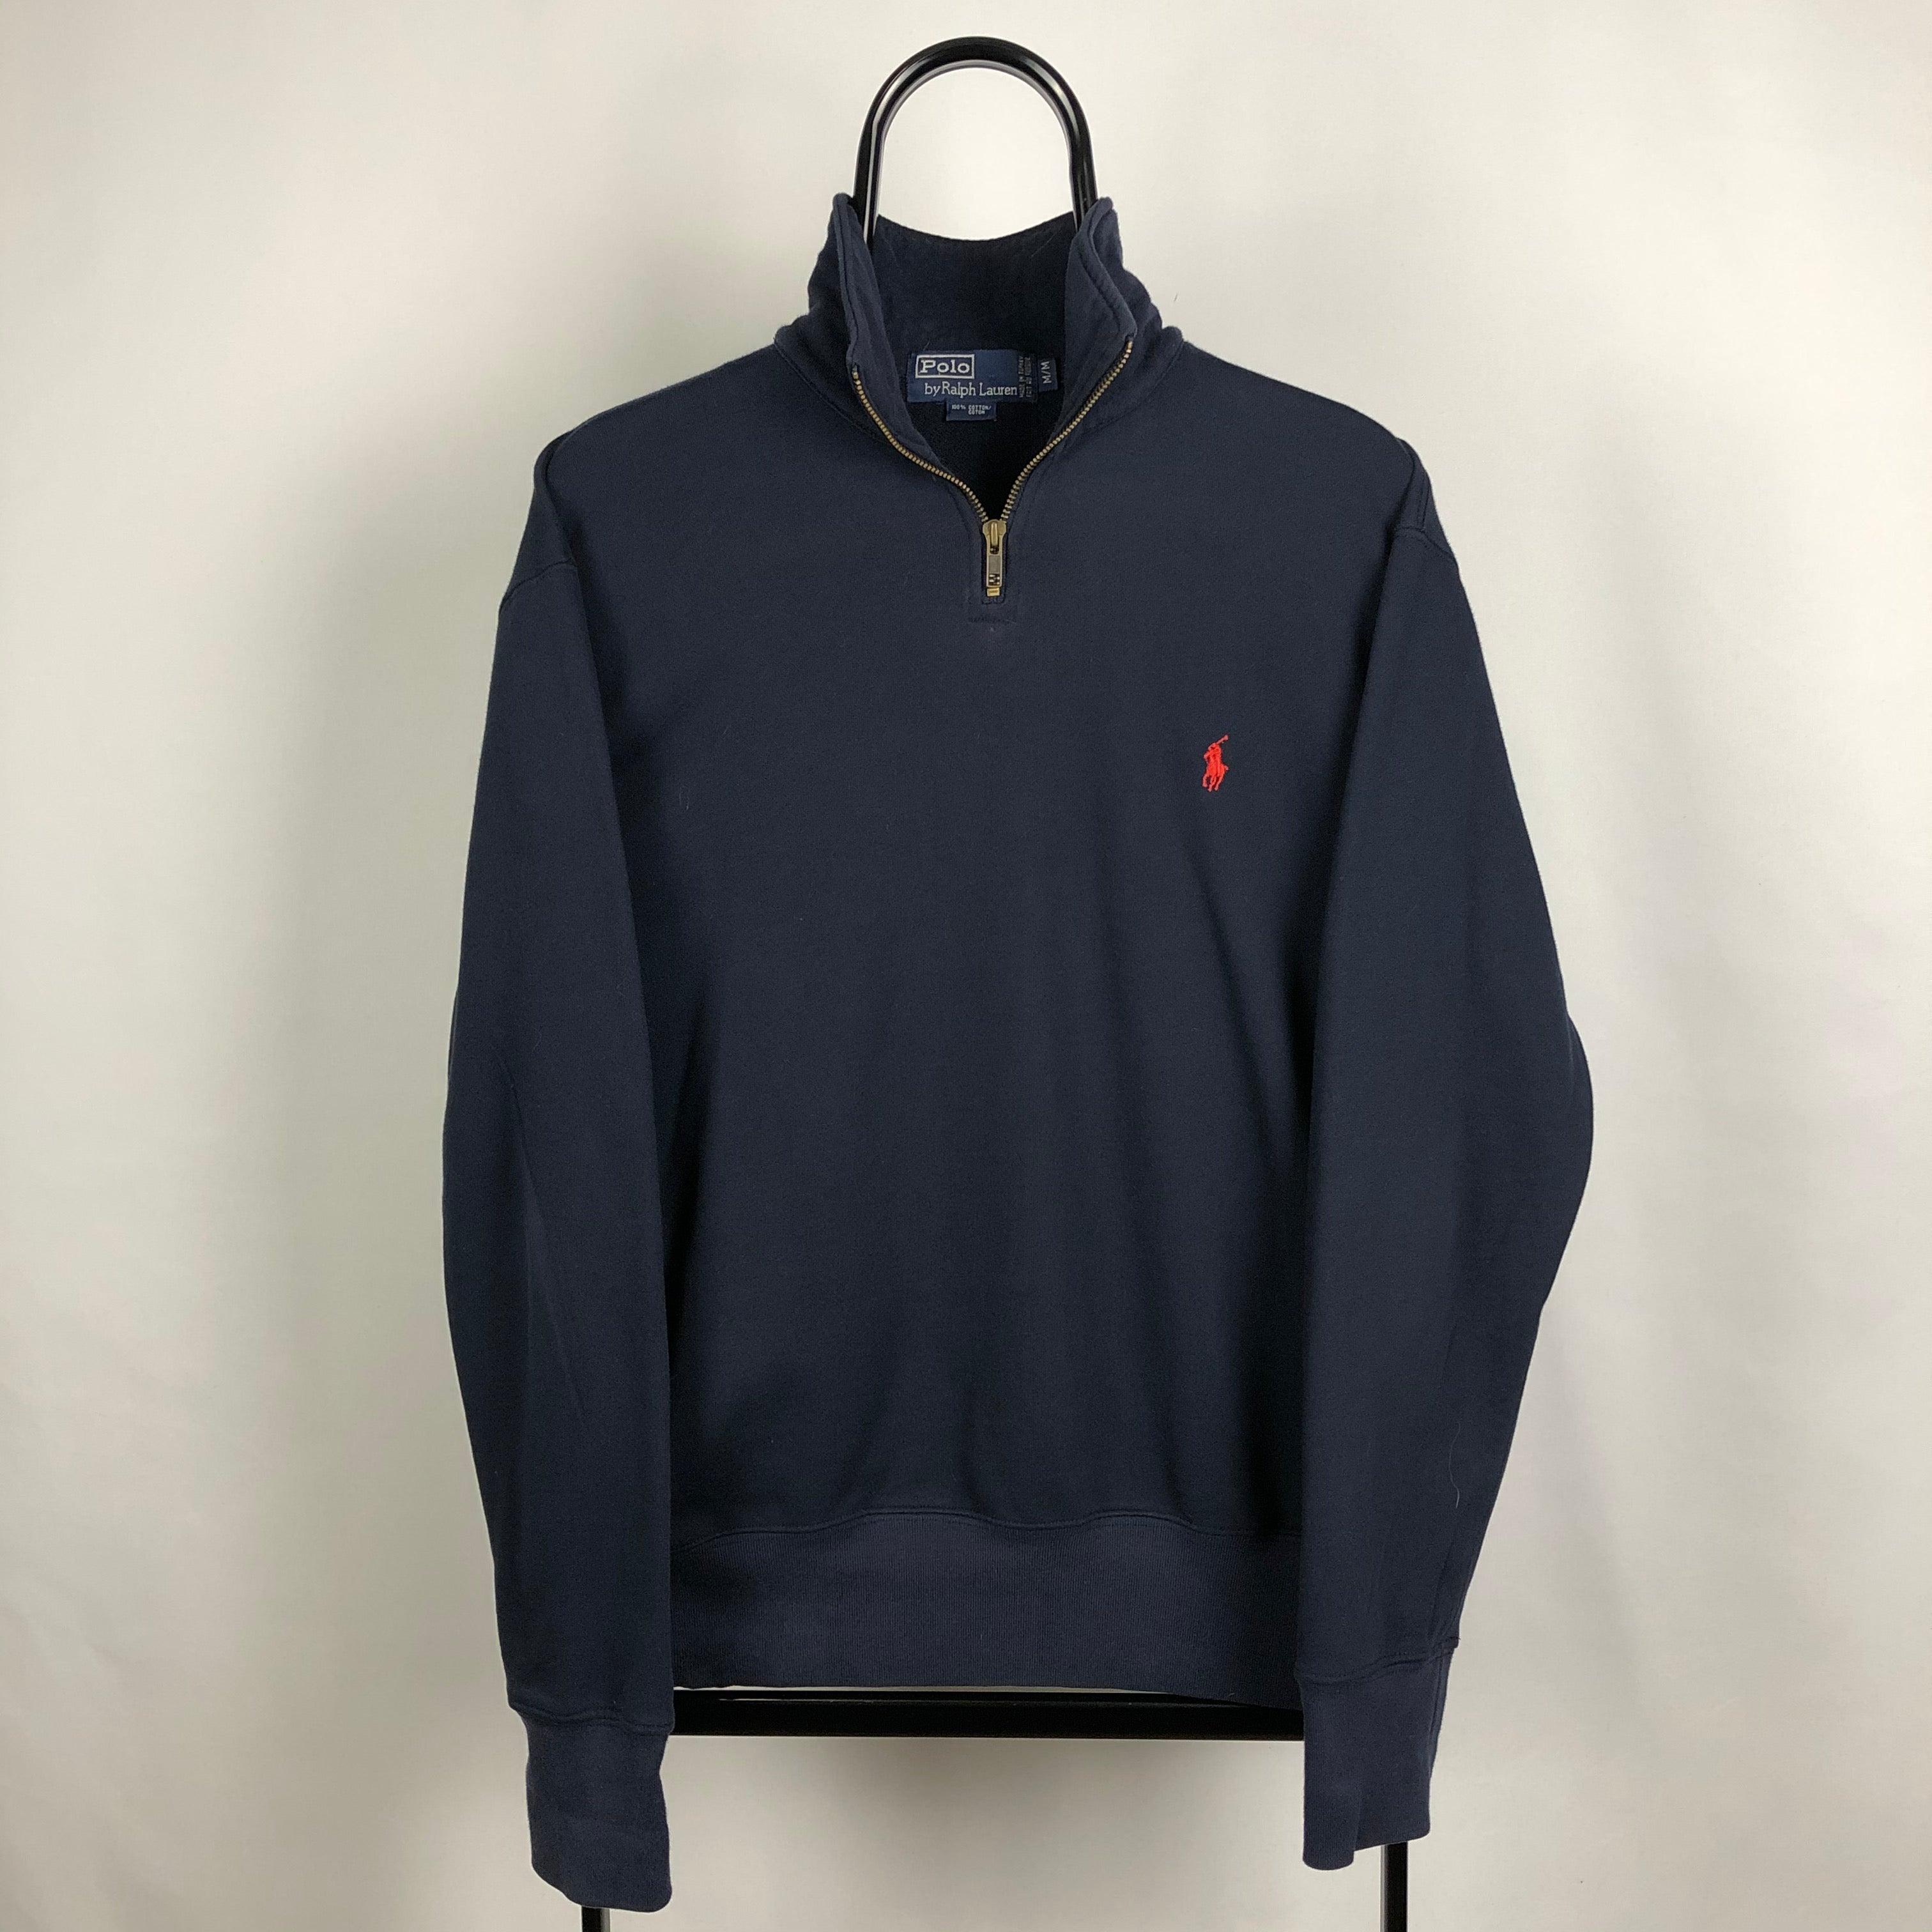 Polo 1/4 Zip Sweatshirt in Navy - Men's Medium/Women's Large - Vintique ...